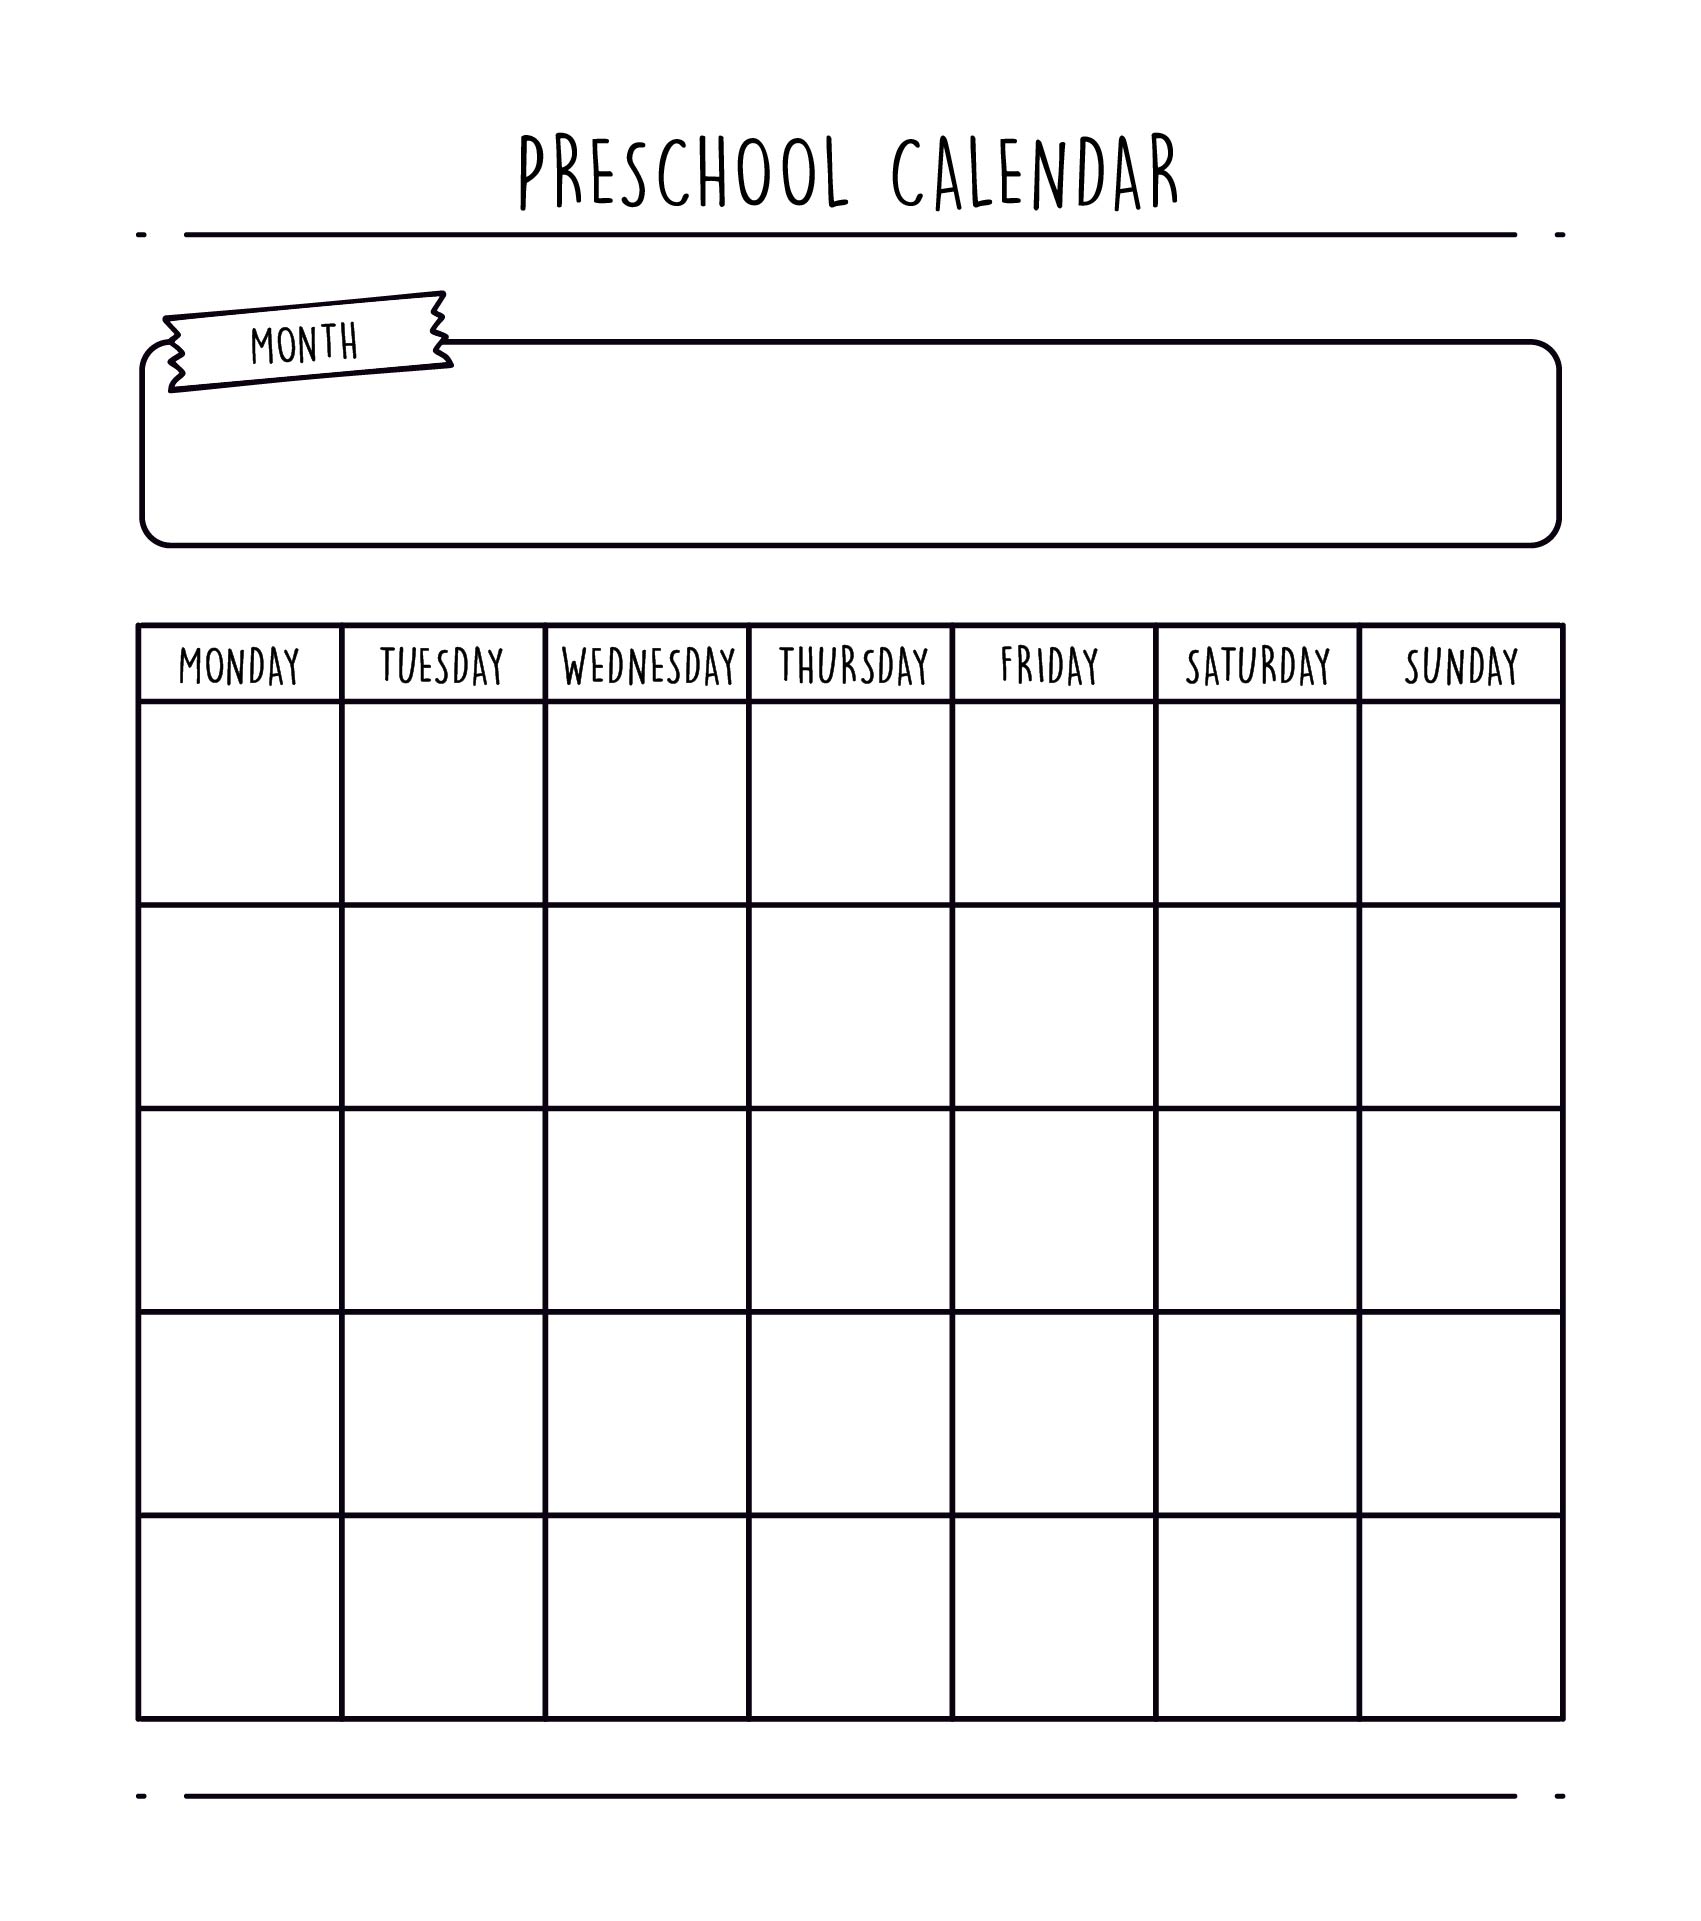 5-best-images-of-free-printable-preschool-calendar-template-preschool